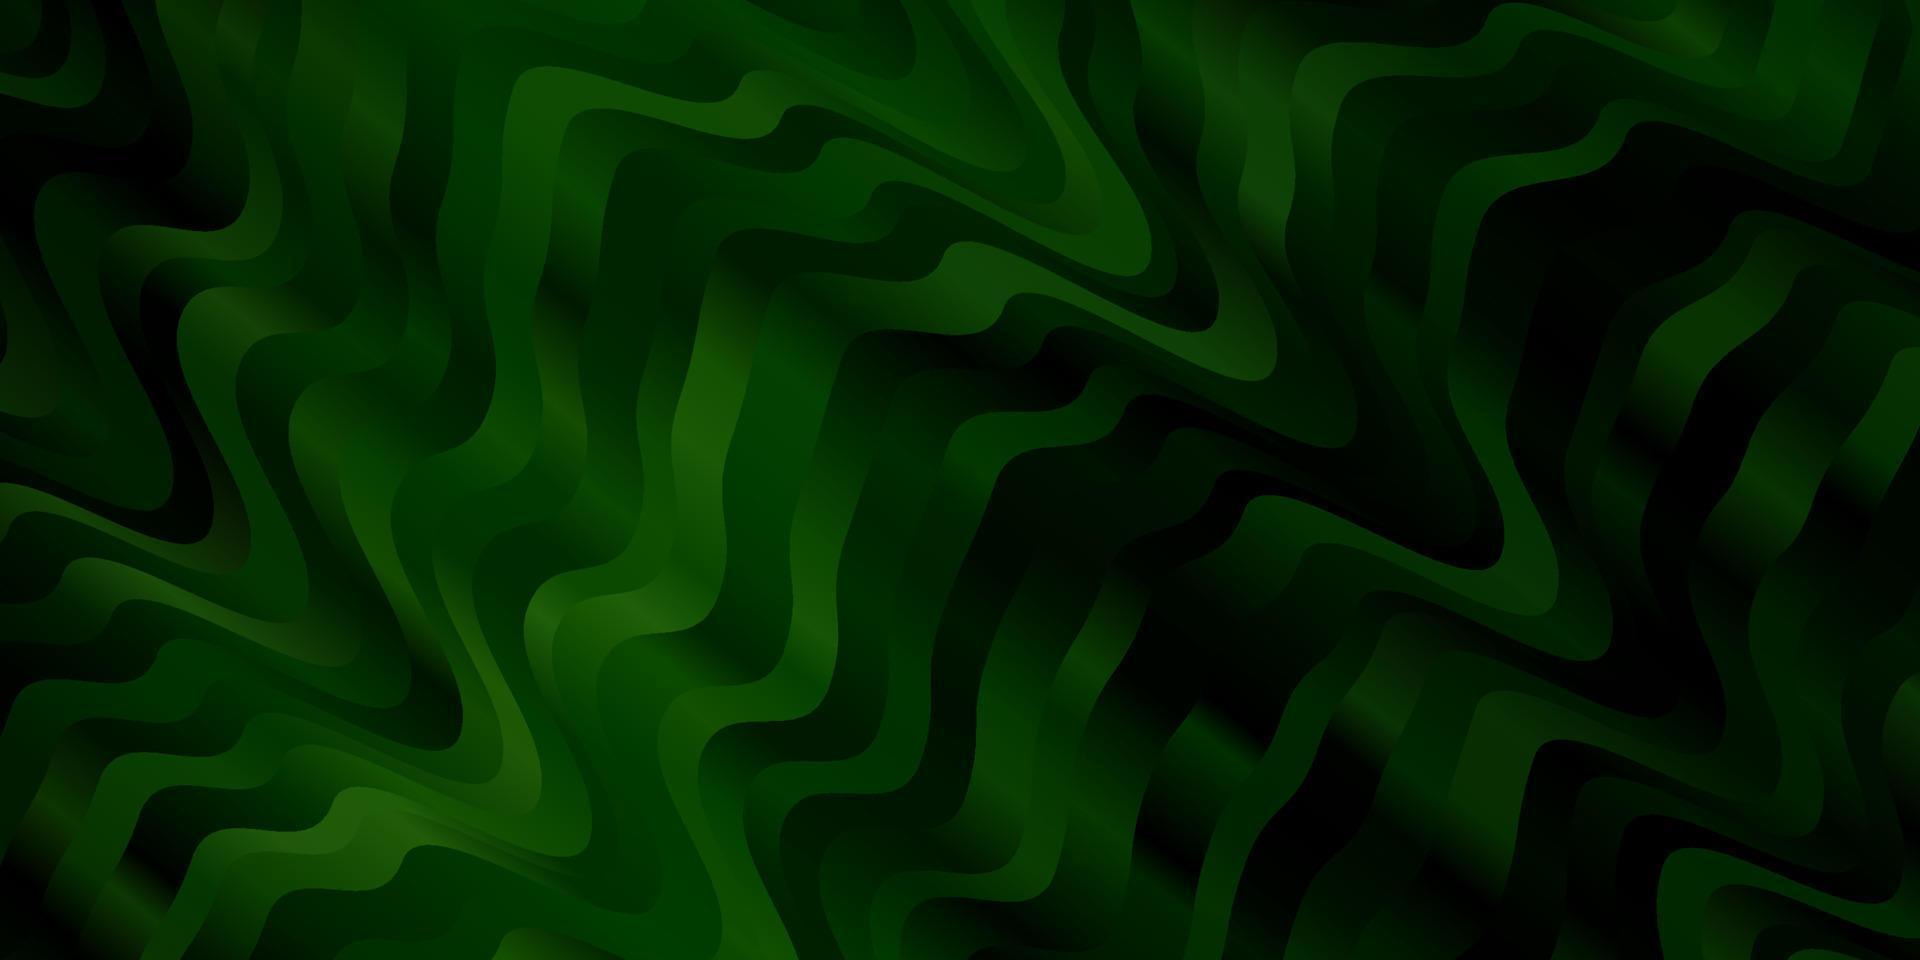 mörkgrönt vektormönster med linjer. vektor